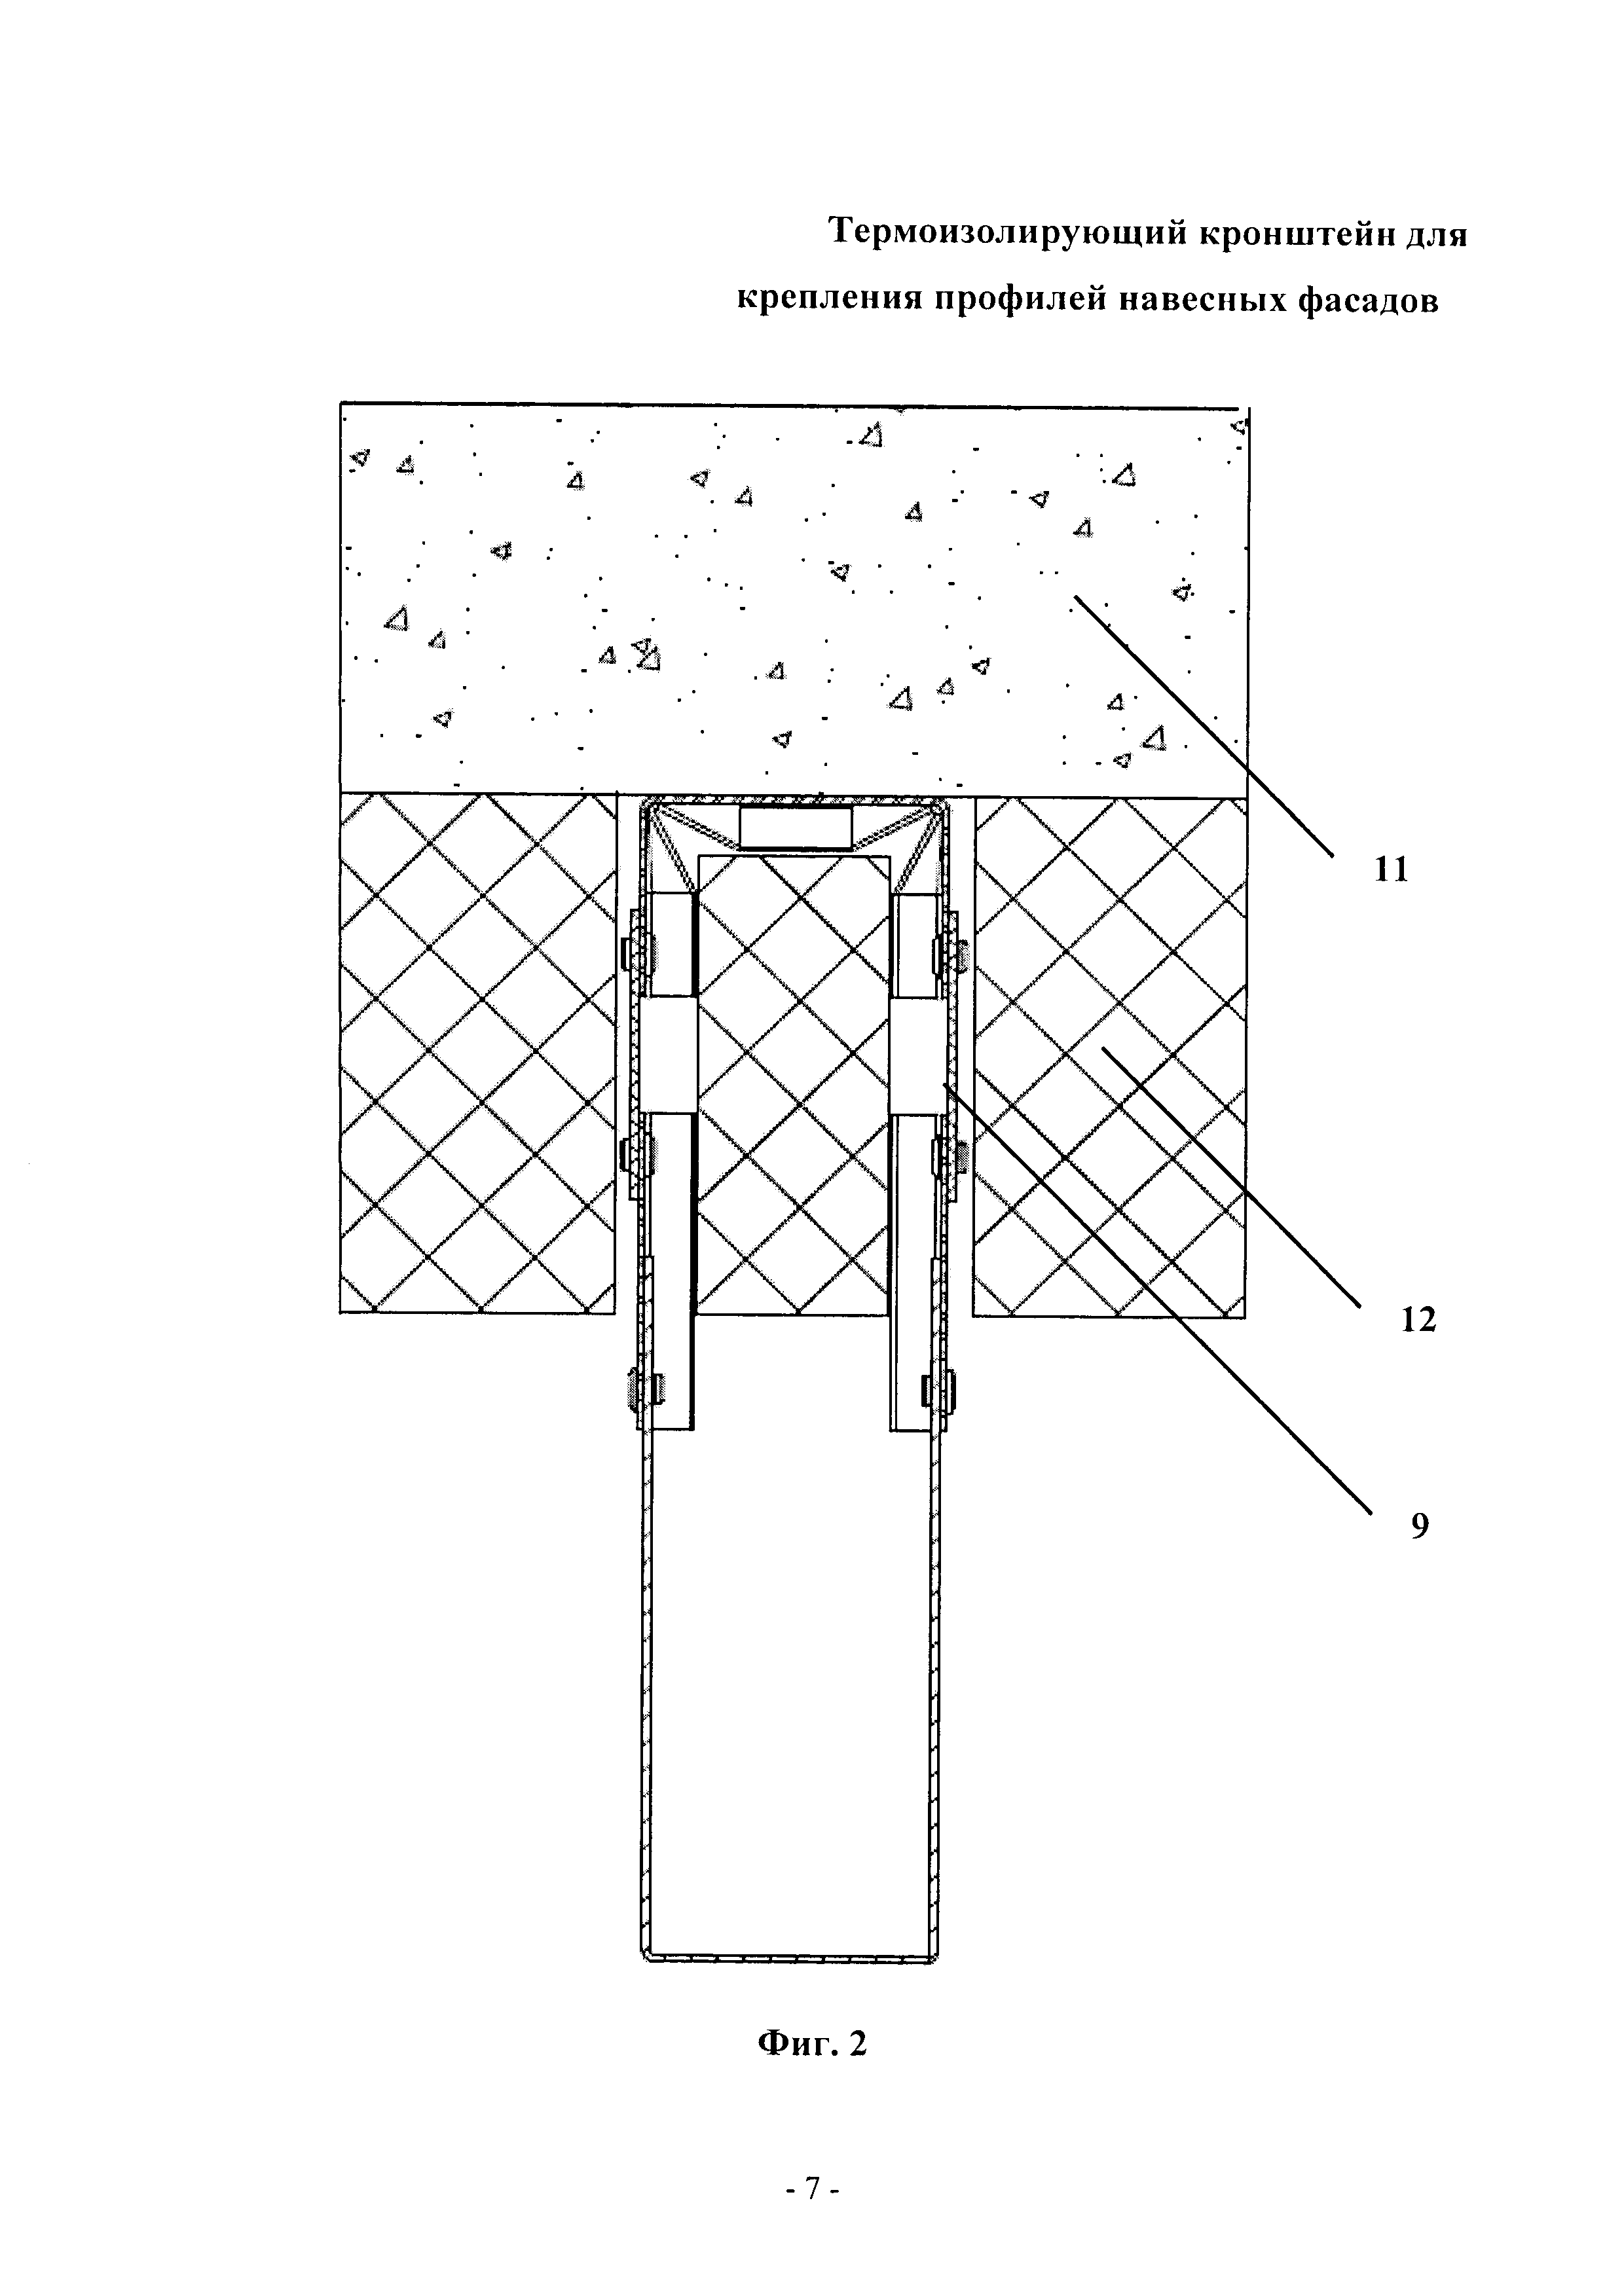 Термоизолирующий кронштейн для крепления профилей навесных фасадов